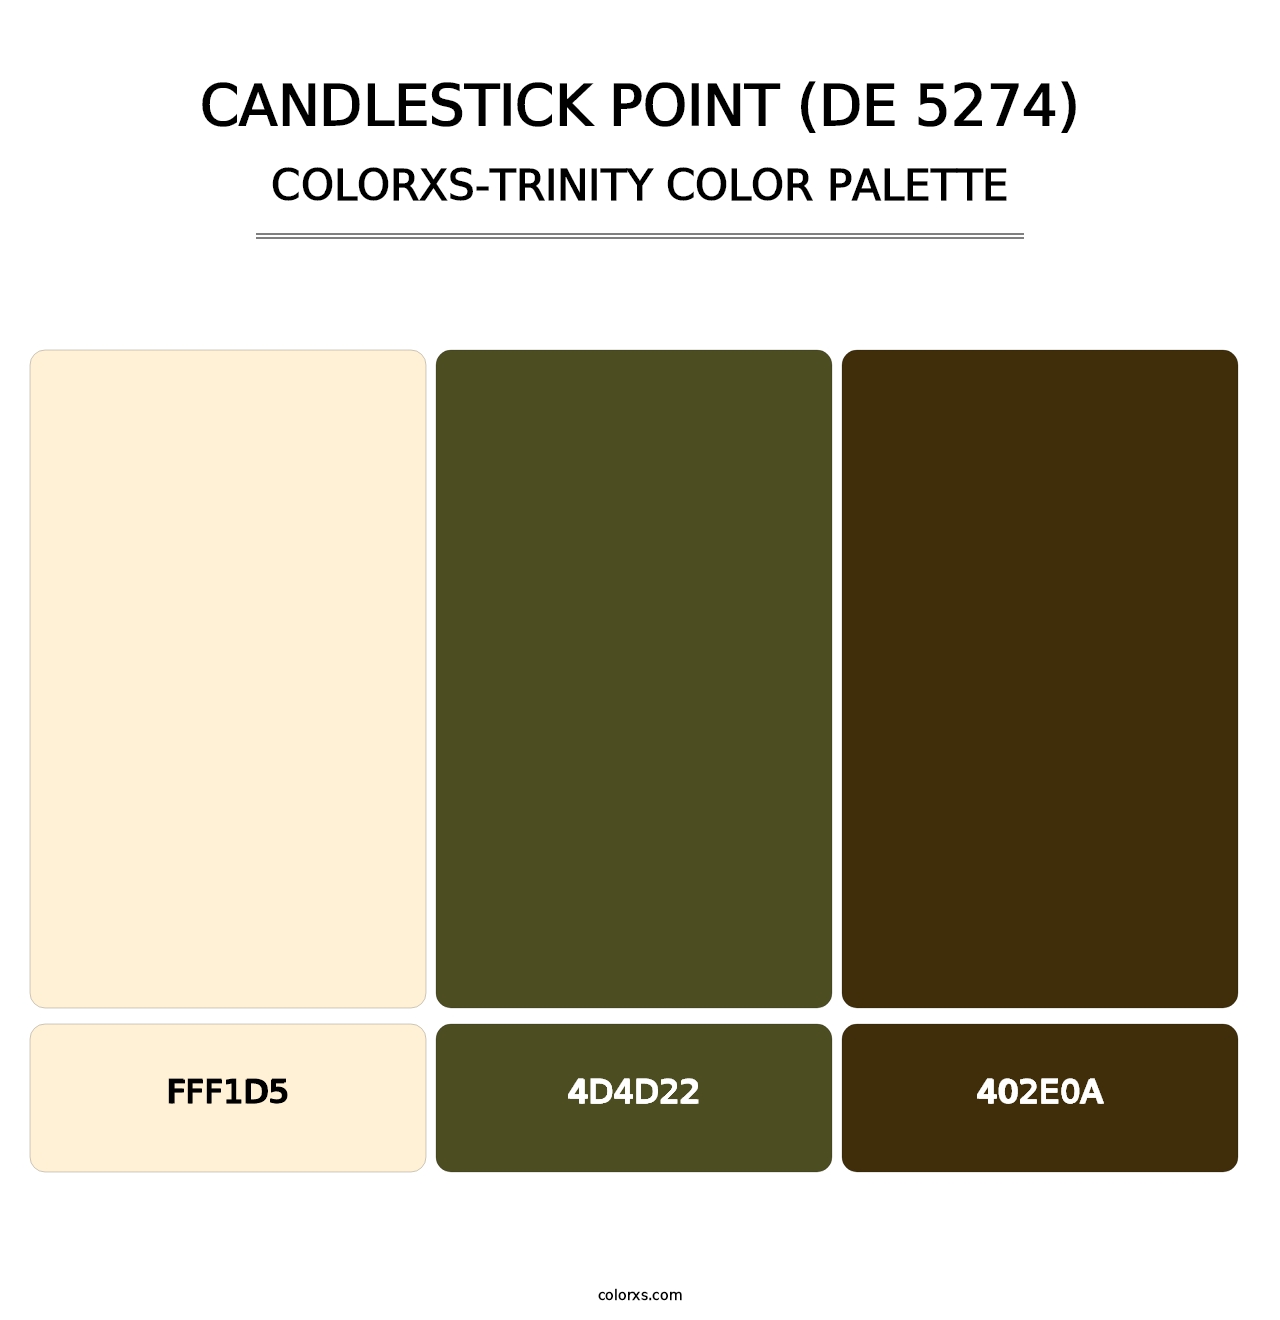 Candlestick Point (DE 5274) - Colorxs Trinity Palette